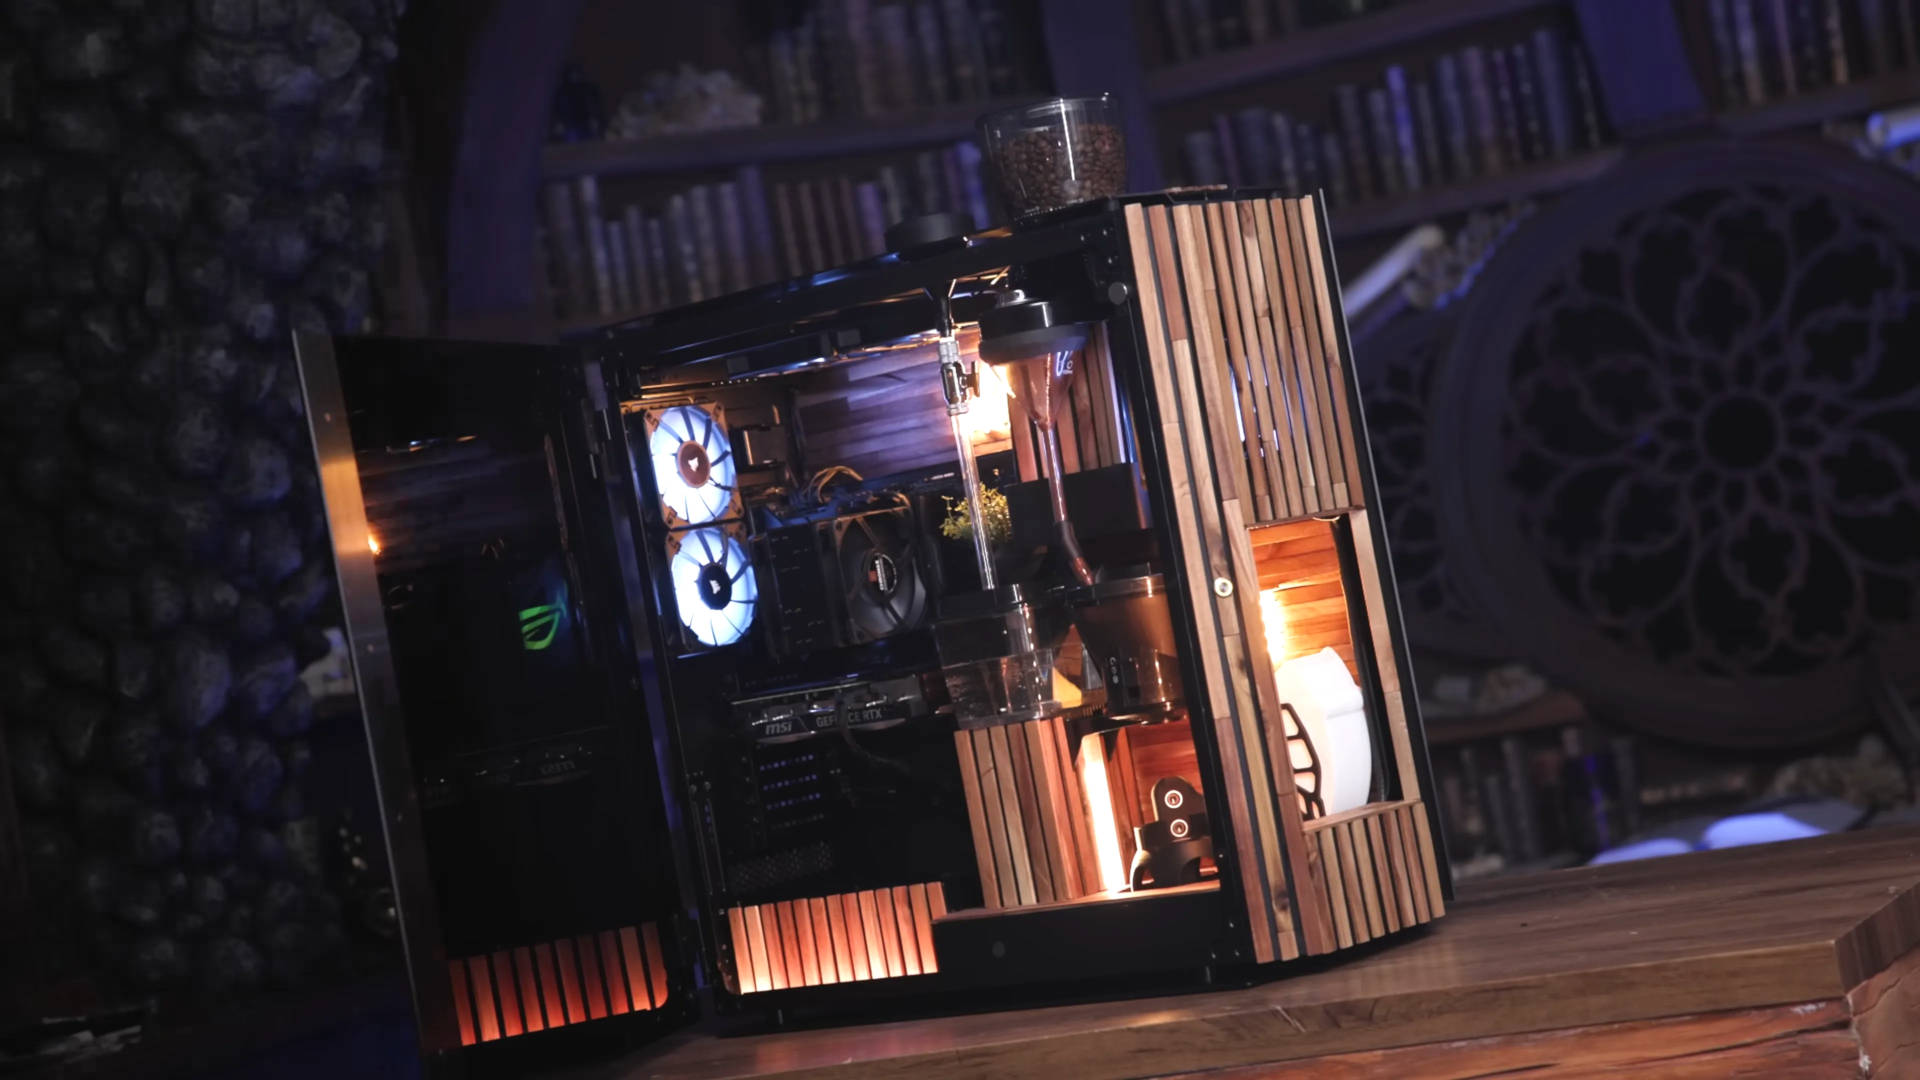 Кофе и компьютерные игры гармонично сочетаются друг с другом в этой сказочной скандинавской конструкции, оформленной в стиле деревянной сауны.